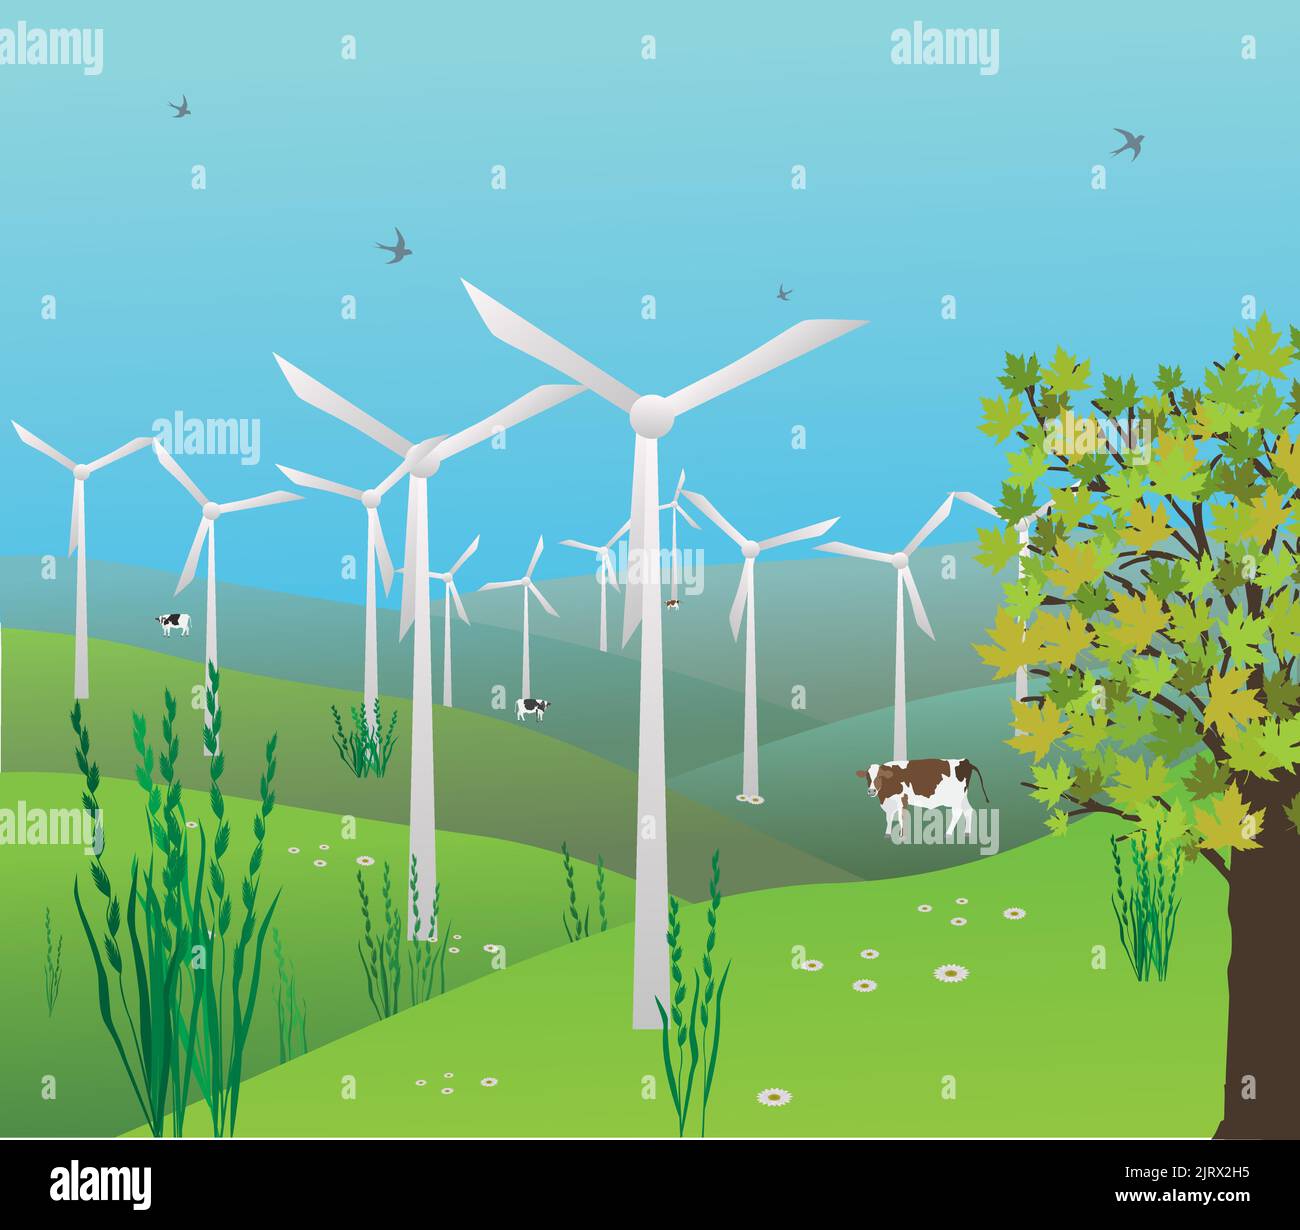 Eine Landschaft mit Windmühlen, Hügeln und einigen Kühen. Im blauen Himmel fliegen Vögel. Nachhaltige Zukunft Stock Vektor